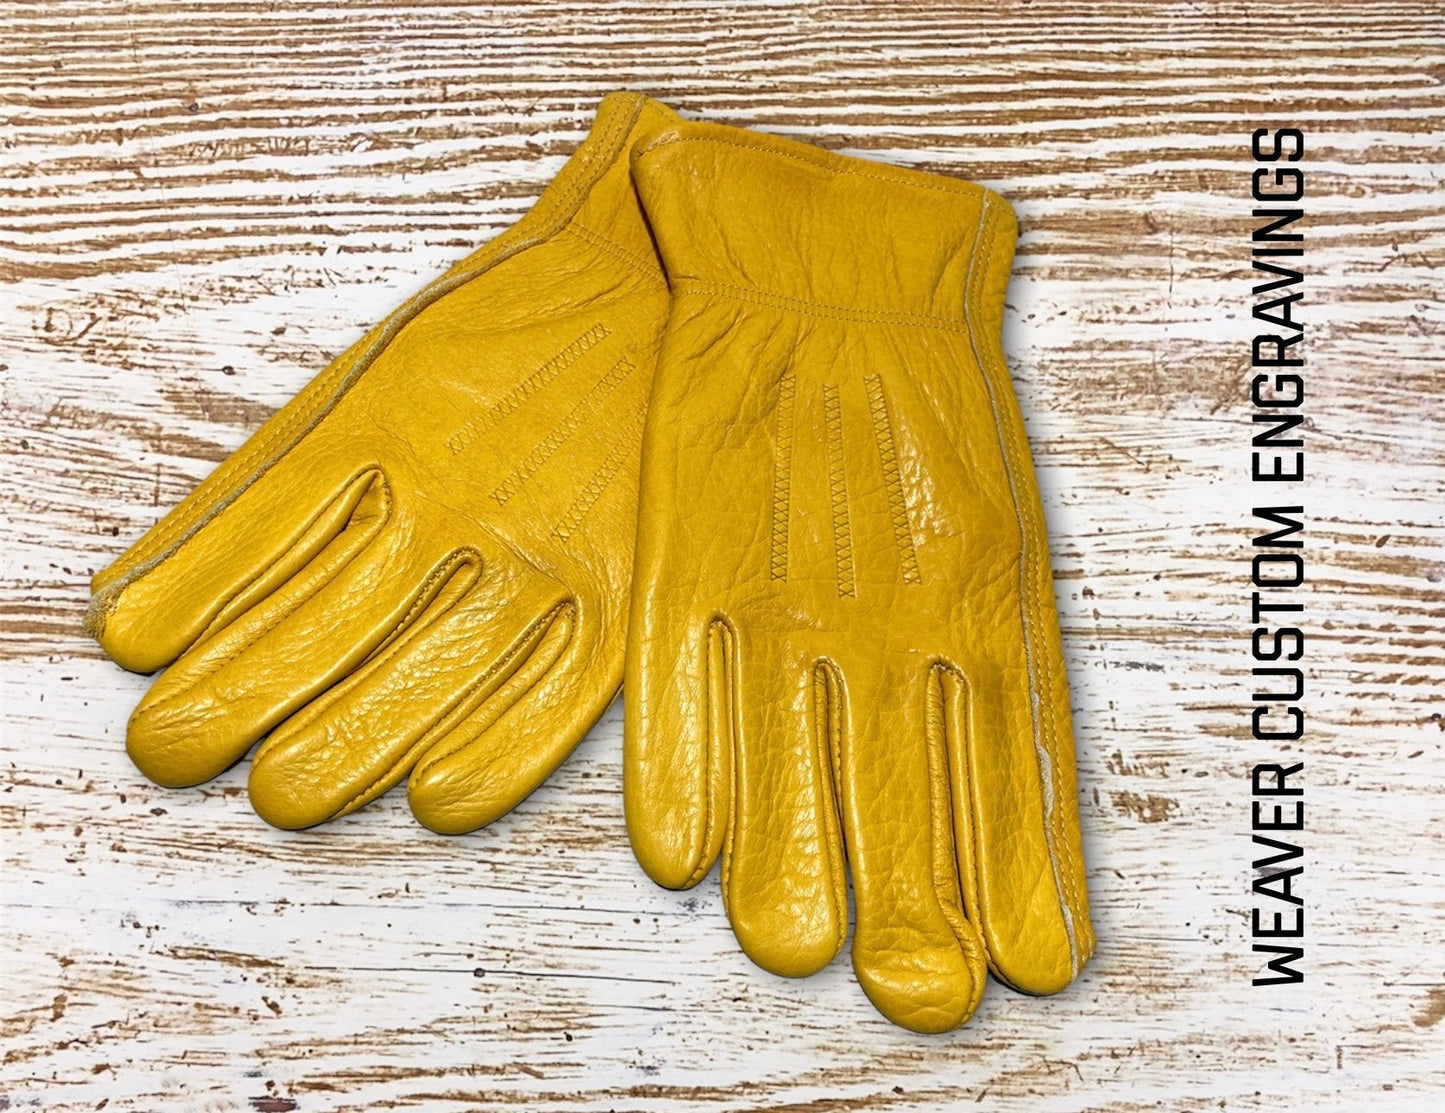 https://weavercustomengravings.com/cdn/shop/products/custom-leather-work-gloves-963053.jpg?v=1646725749&width=1445